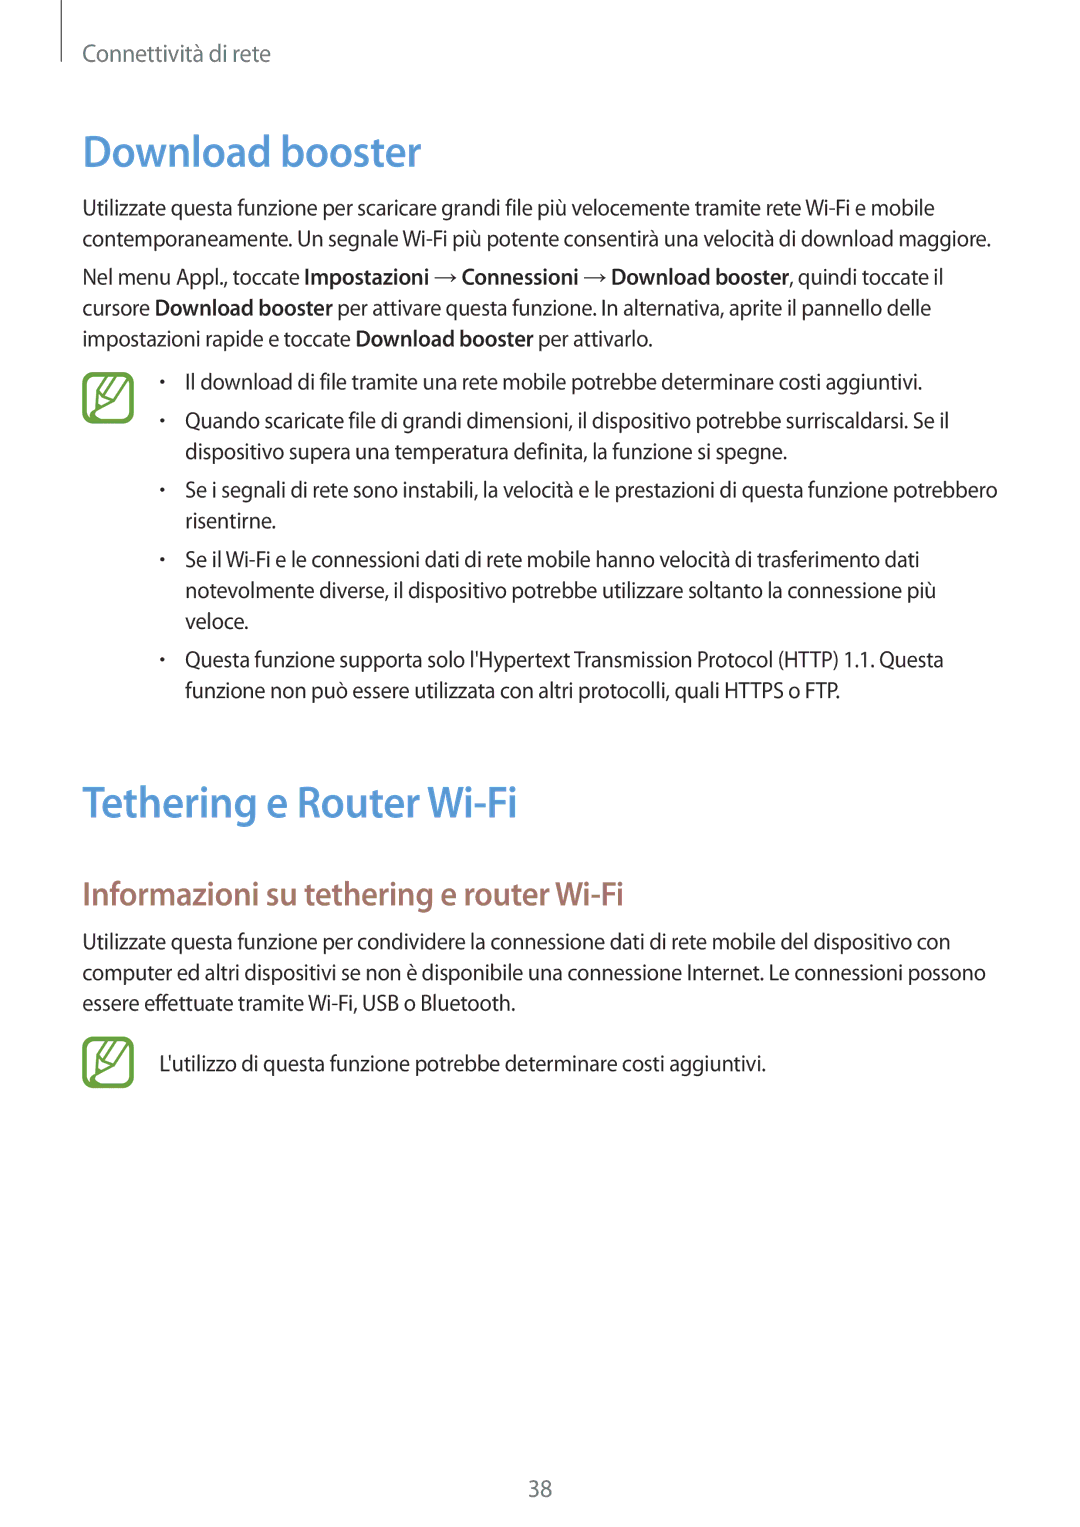 Samsung SM-T805NZWAITV manual Download booster, Tethering e Router Wi-Fi, Informazioni su tethering e router Wi-Fi 